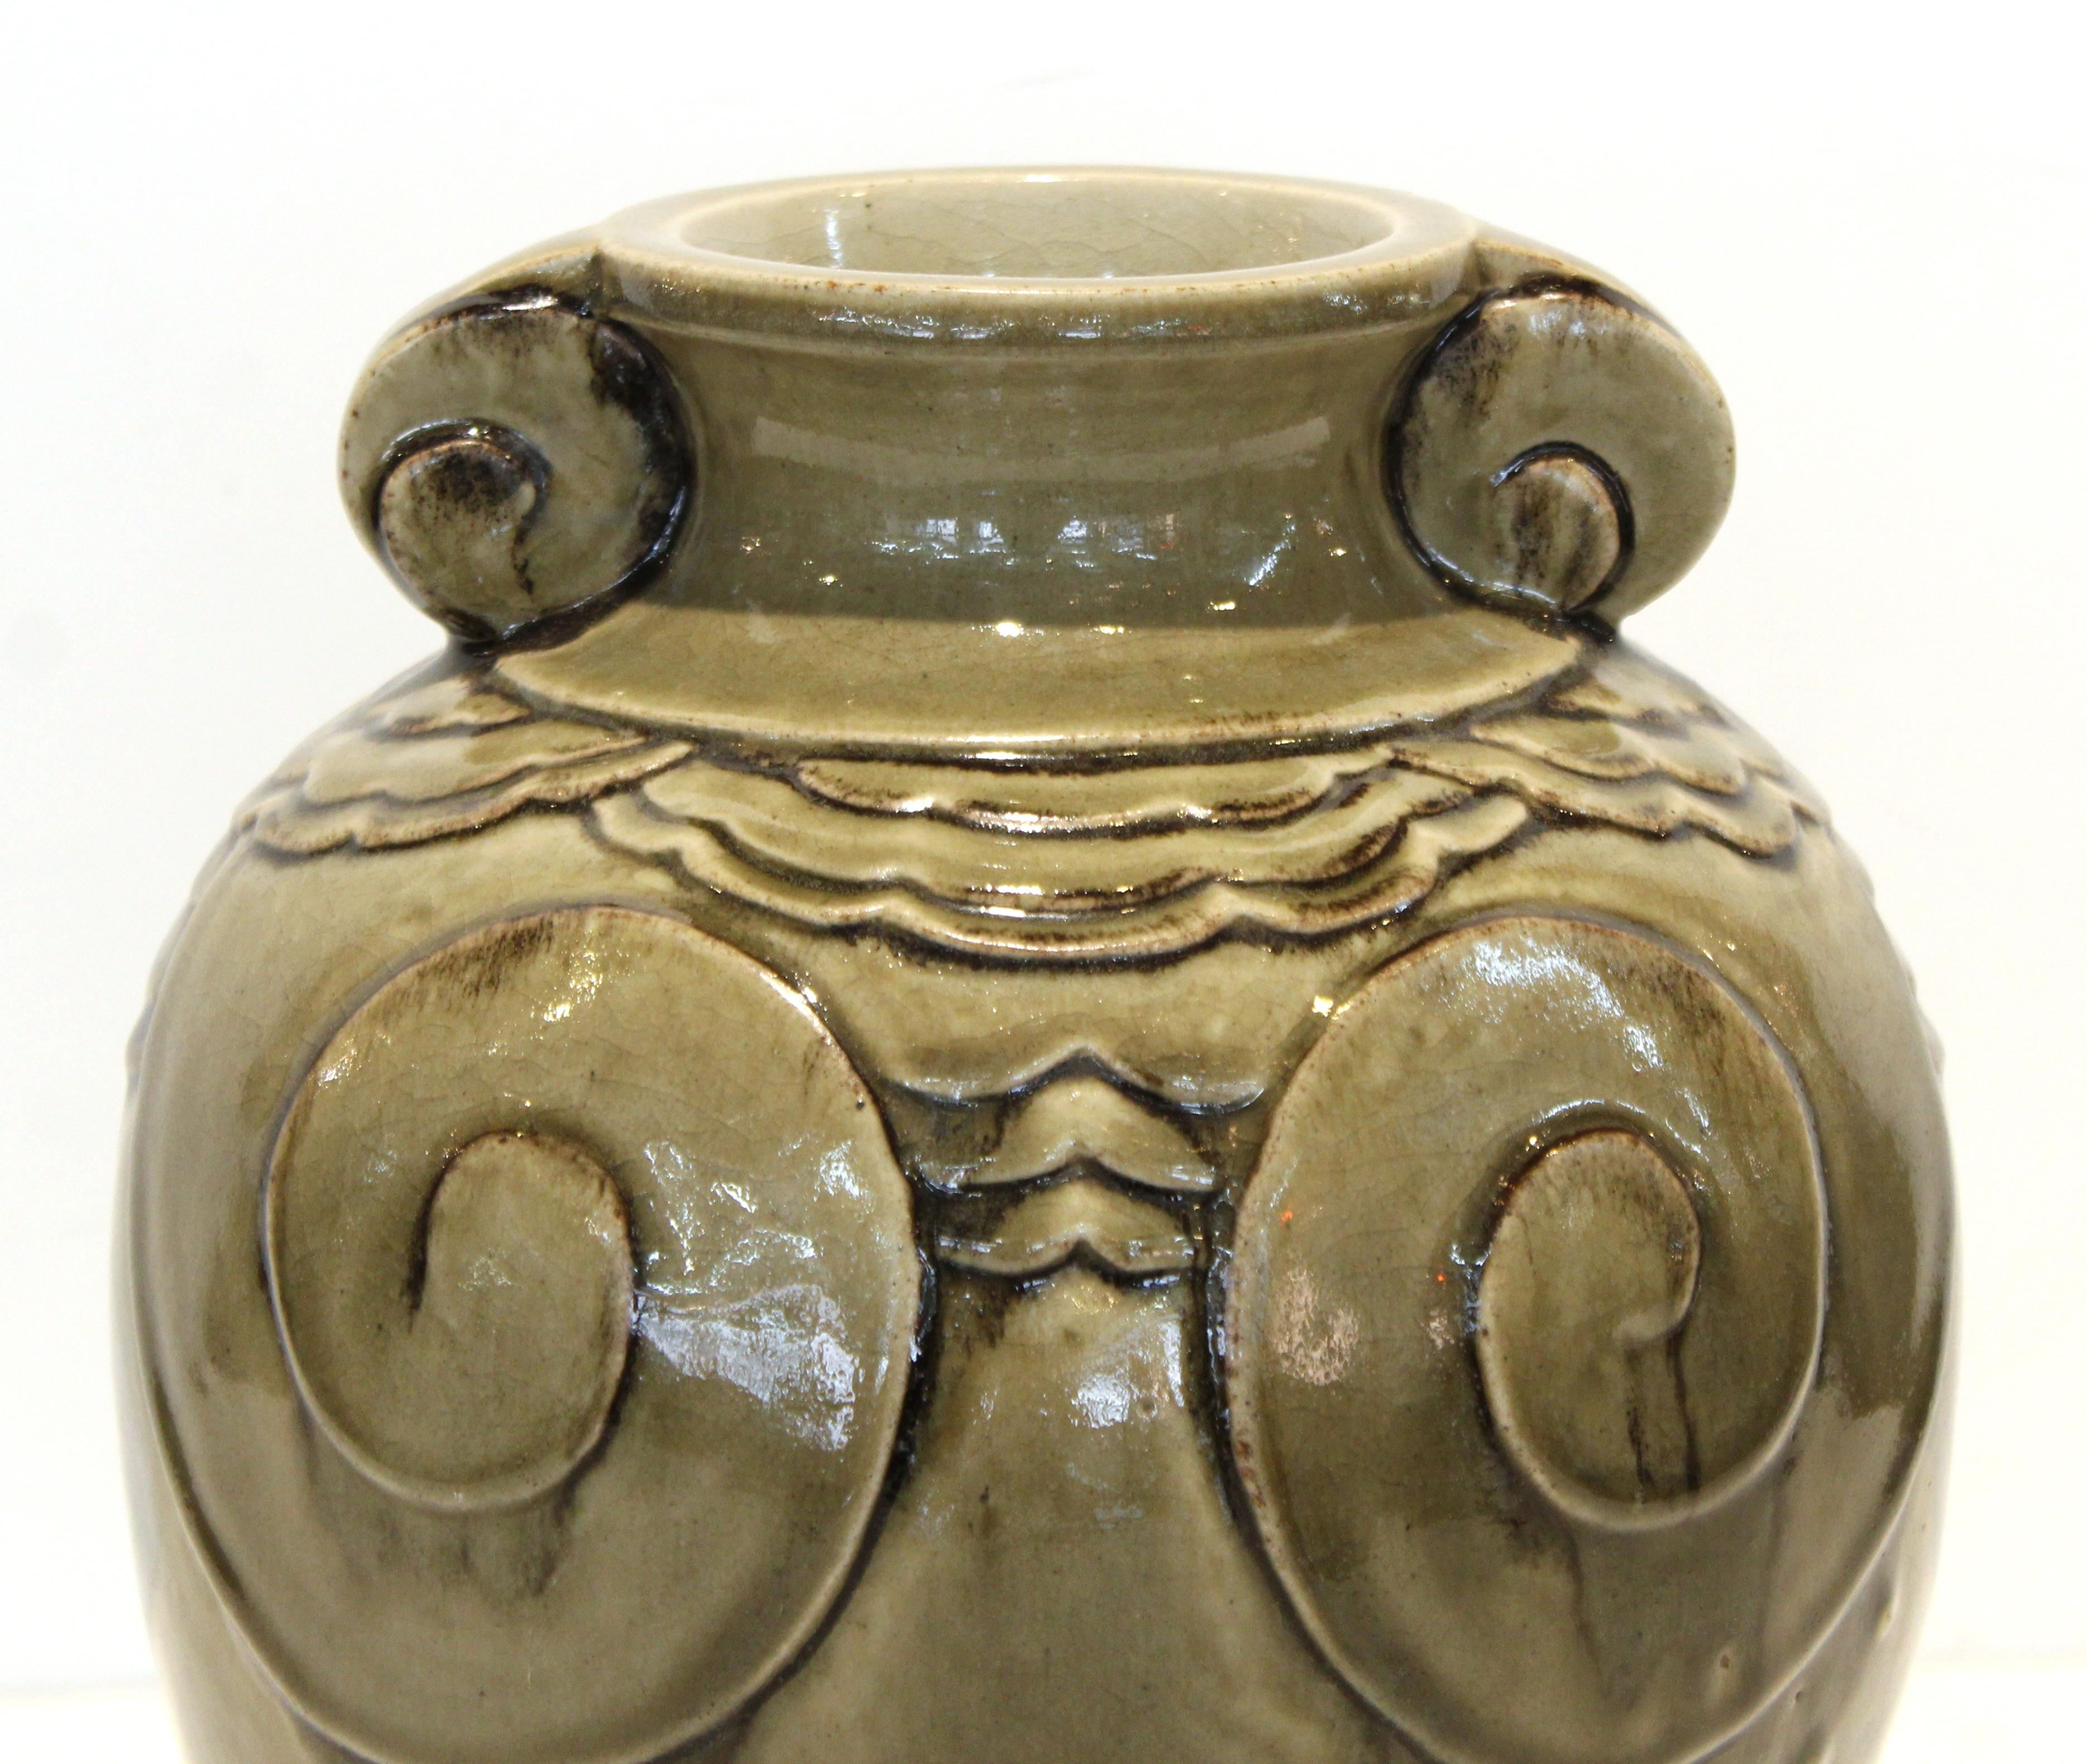 Französische Vase aus hochgebranntem Steingut in Seladongrün aus dem Art Déco-Stil, zugeschrieben in Sevres. Das Stück hat ein dekoratives skulpturales Relief und wurde Mitte der 1920er Jahre in Frankreich hergestellt. Markierung 